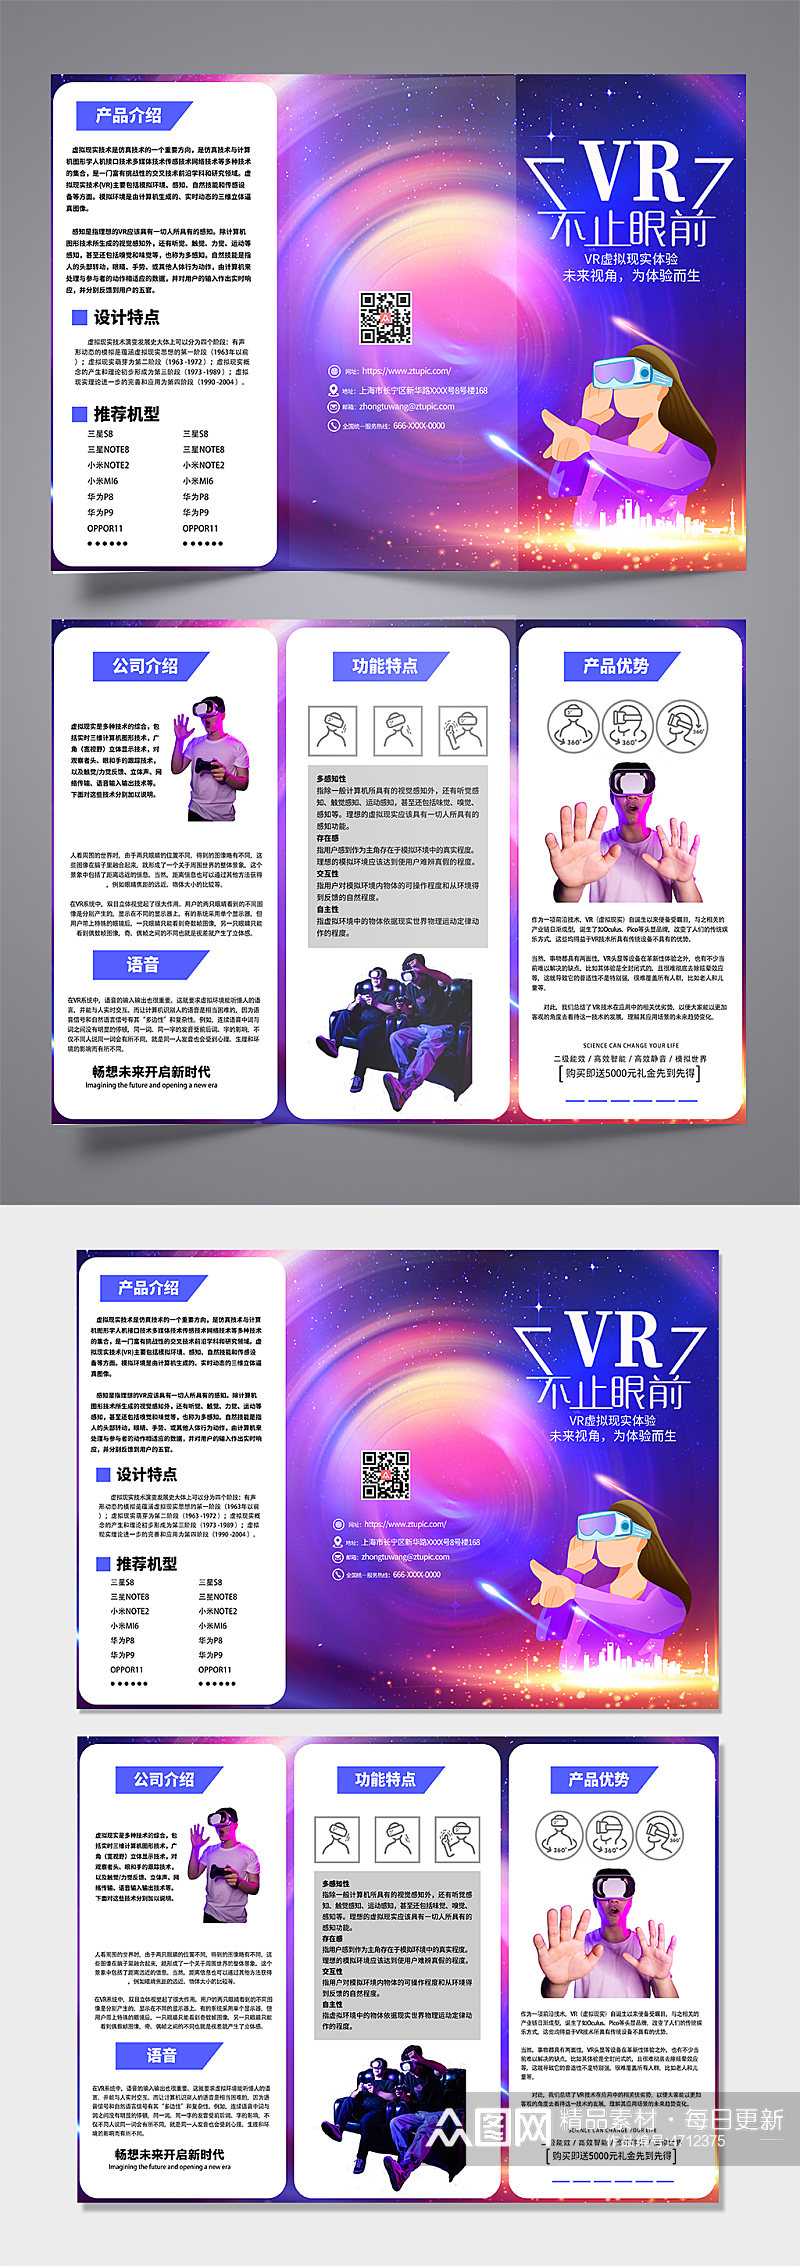 创意时尚VR虚拟现实体验馆宣传三折页素材